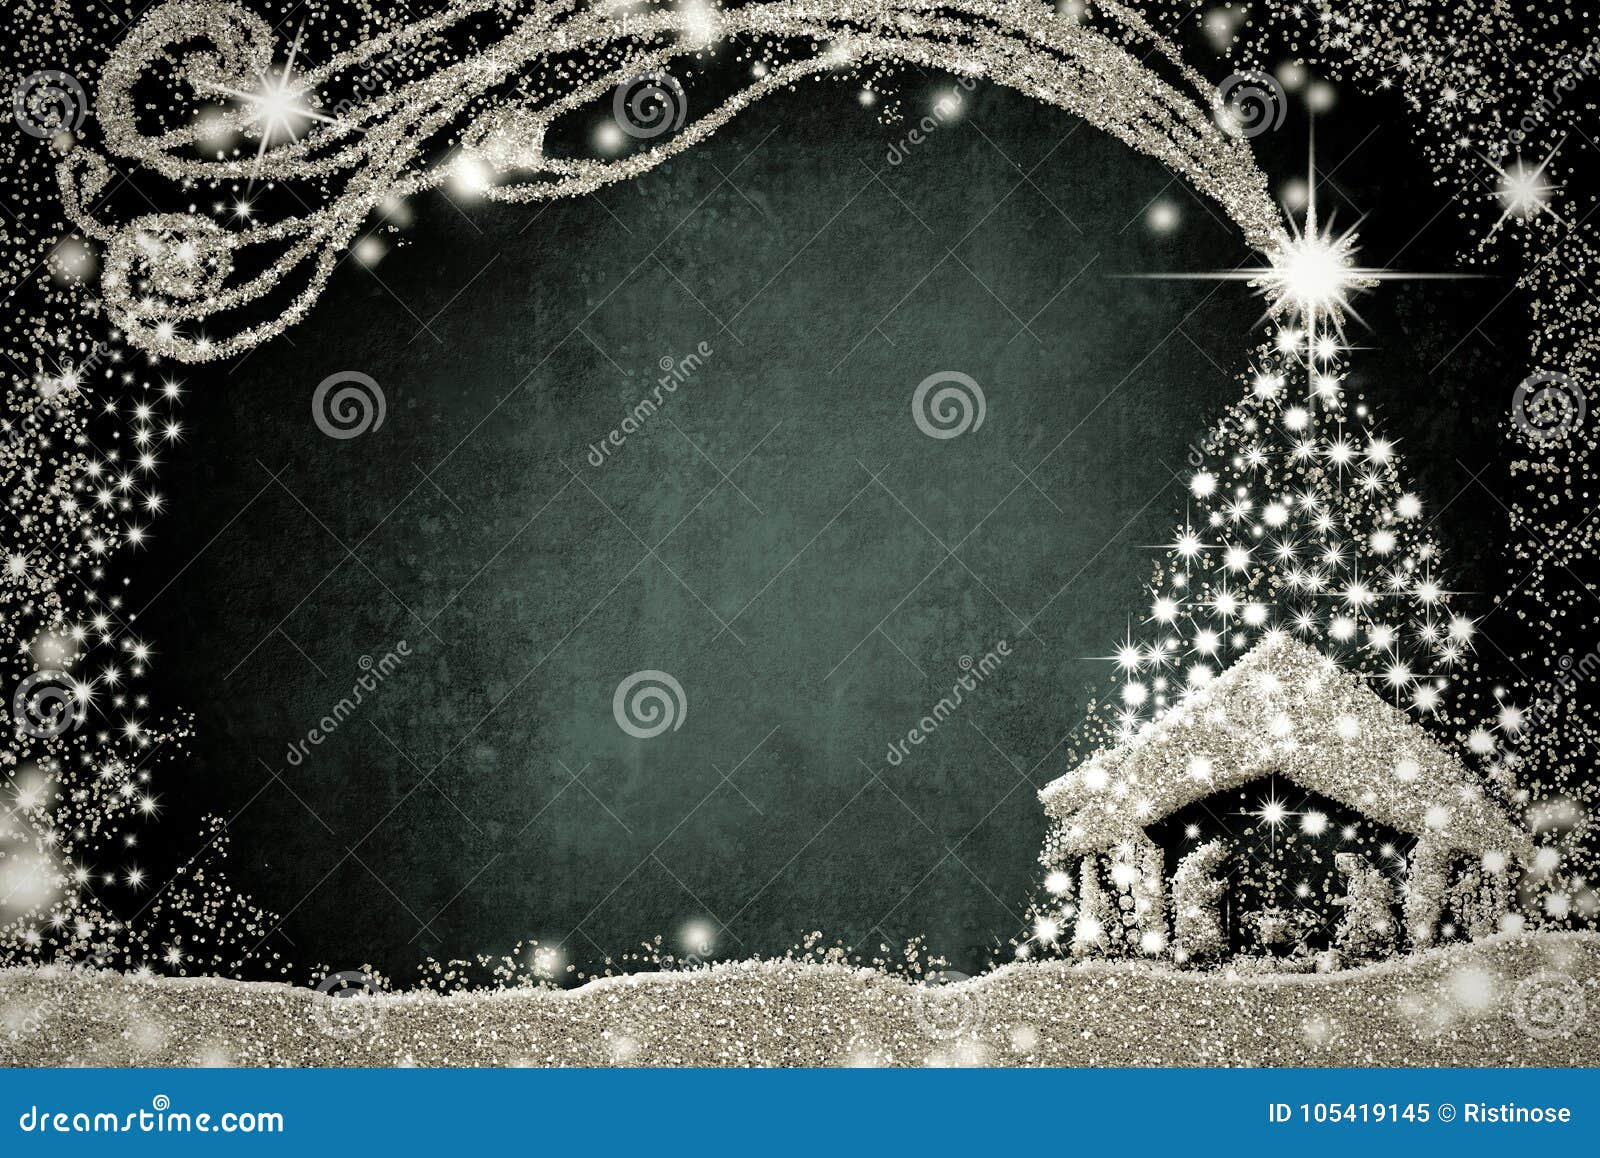 Một cây thông rực rỡ, được trang trí bằng những đèn lấp lánh, đón chào mùa Giáng Sinh đang đến gần. Và bạn đã từng nghĩ tới việc kết hợp cây thông và những nhân vật trong câu chuyện Chúa Giáng Sinh không? Hãy cùng chiêm ngưỡng bức tranh Christmas Tree Nativity thật ấn tượng.